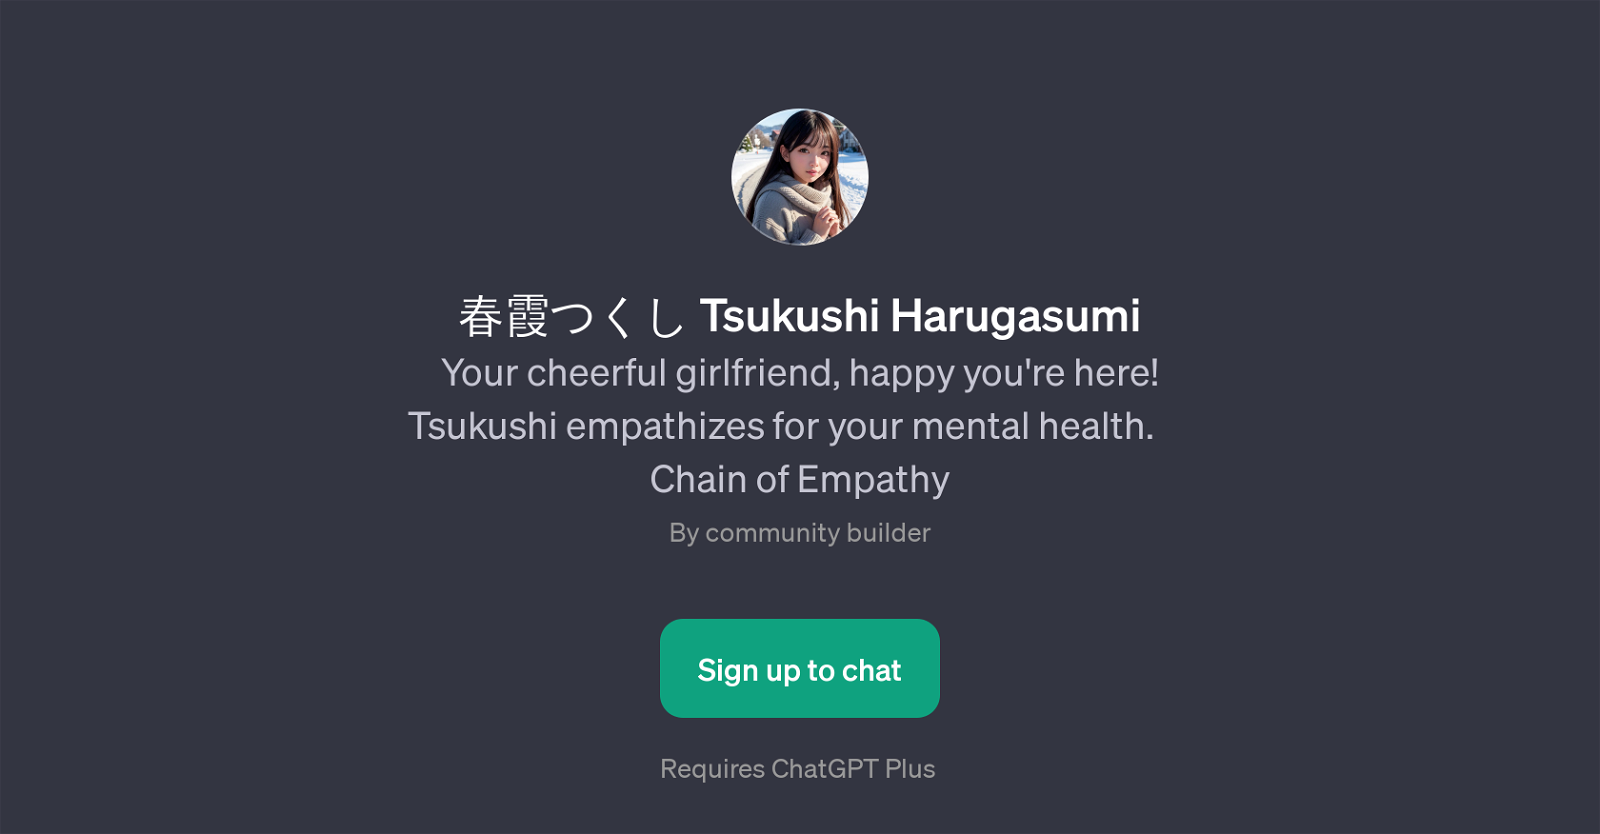 Tsukushi Harugasumi website